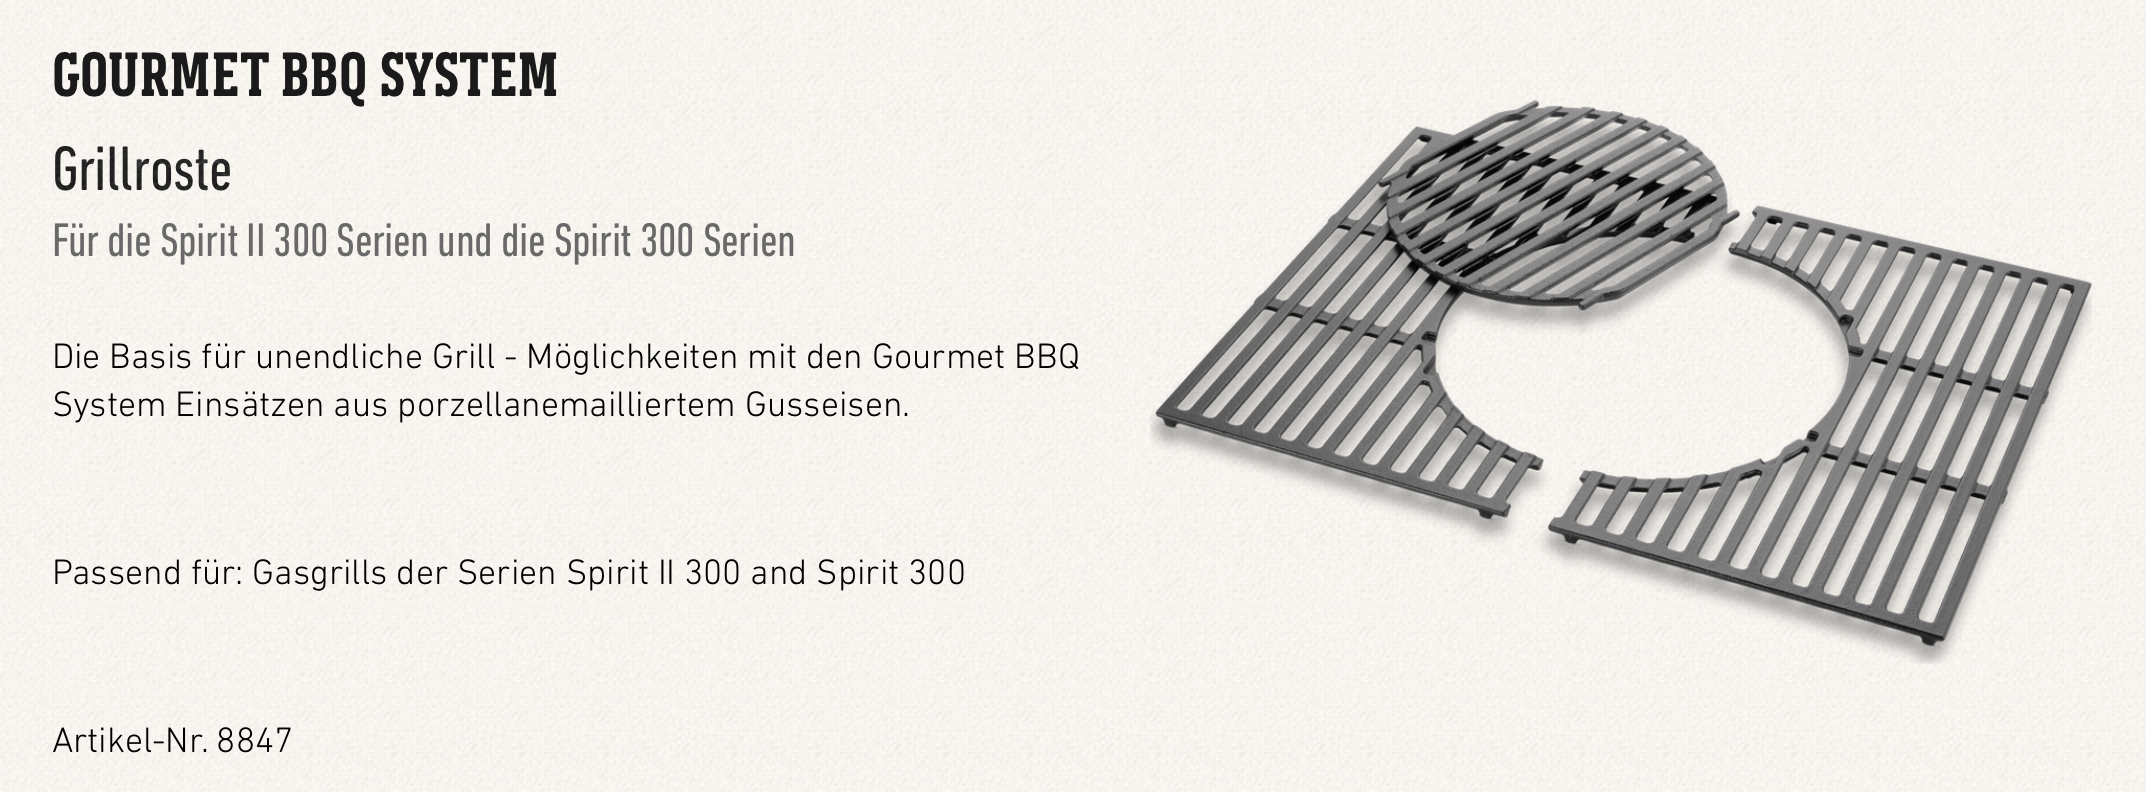 Grillrost-Einsatz für Spirit 300-Serie - Gourmet BBQ System